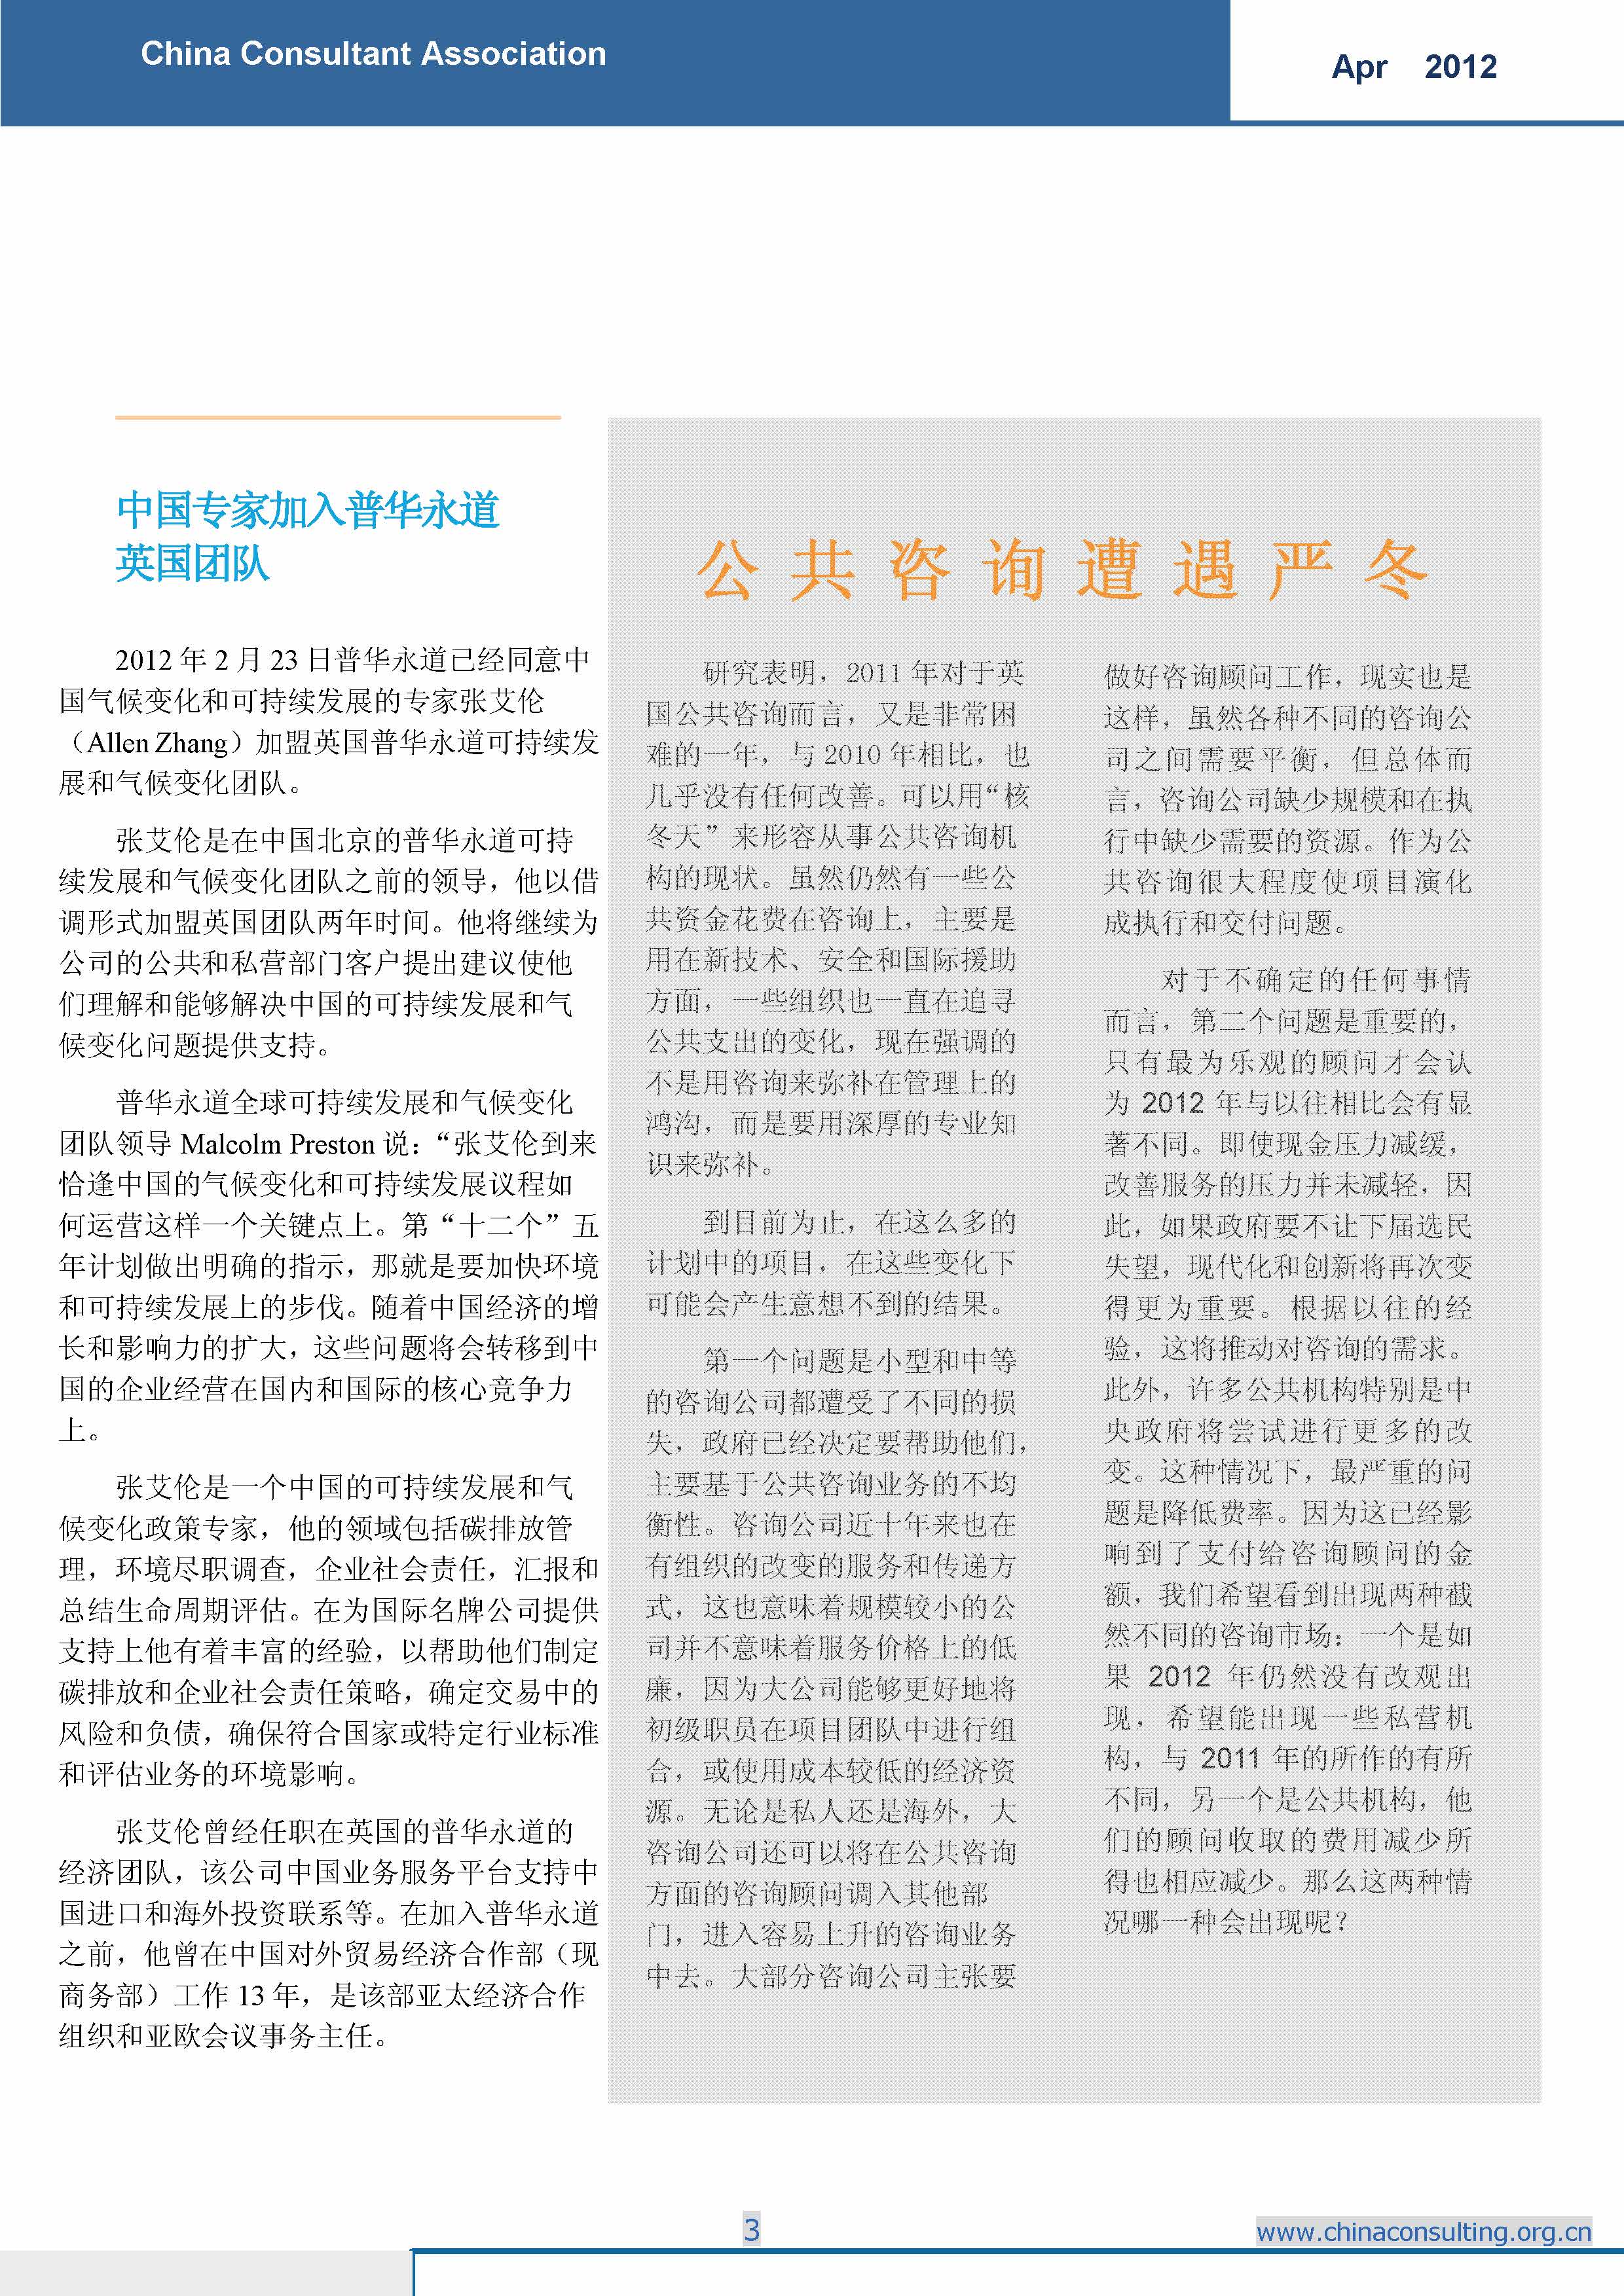 6中国科技咨询协会国际快讯（第六期）_页面_05.jpg